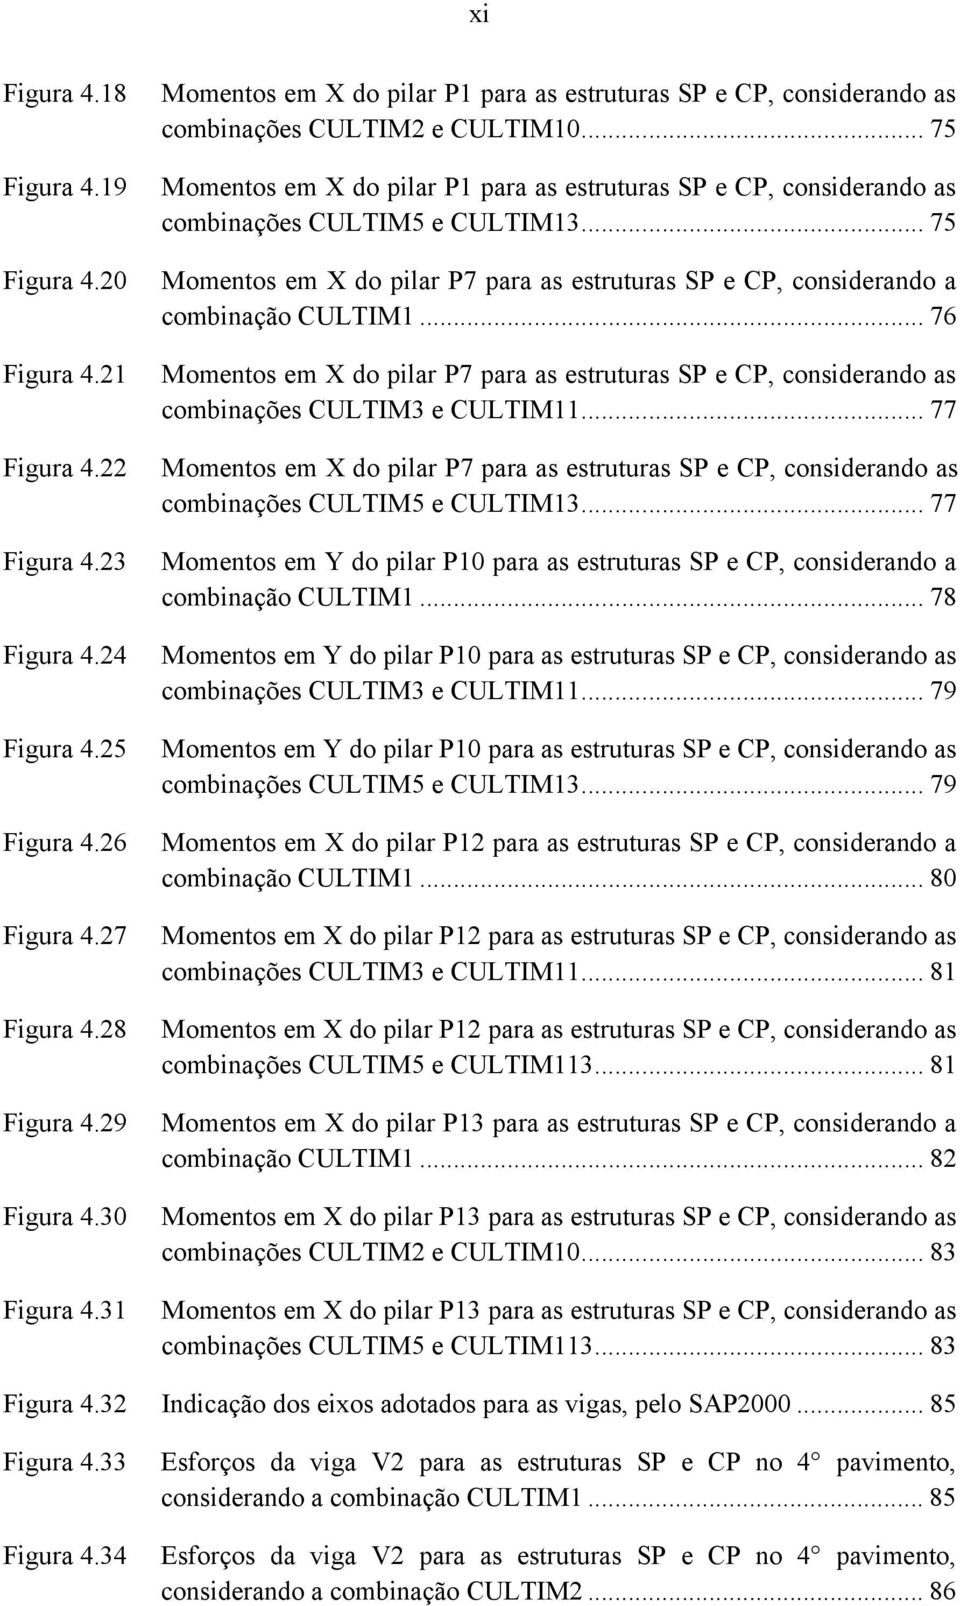 .. 75 Momentos em X do pilar P1 para as estruturas SP e CP, considerando as combinações CULTIM5 e CULTIM13... 75 Momentos em X do pilar P7 para as estruturas SP e CP, considerando a combinação CULTIM1.